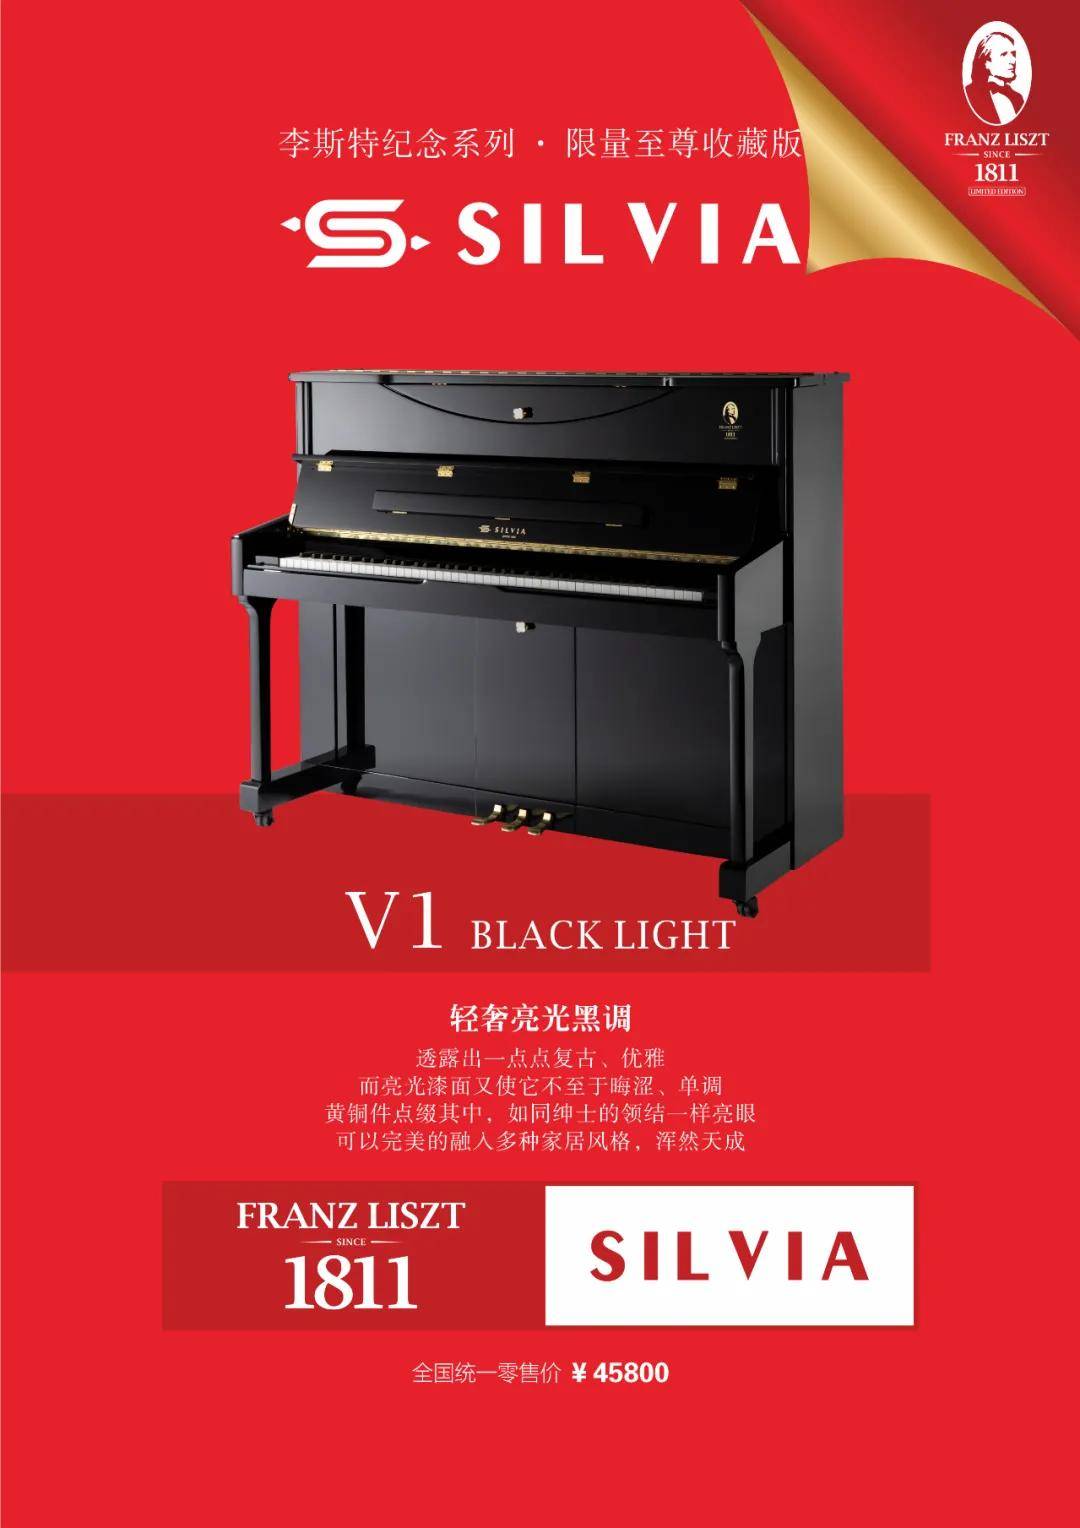 官宣西尔维娅钢琴新款上市李斯特纪念系列限量至尊收藏版已降临